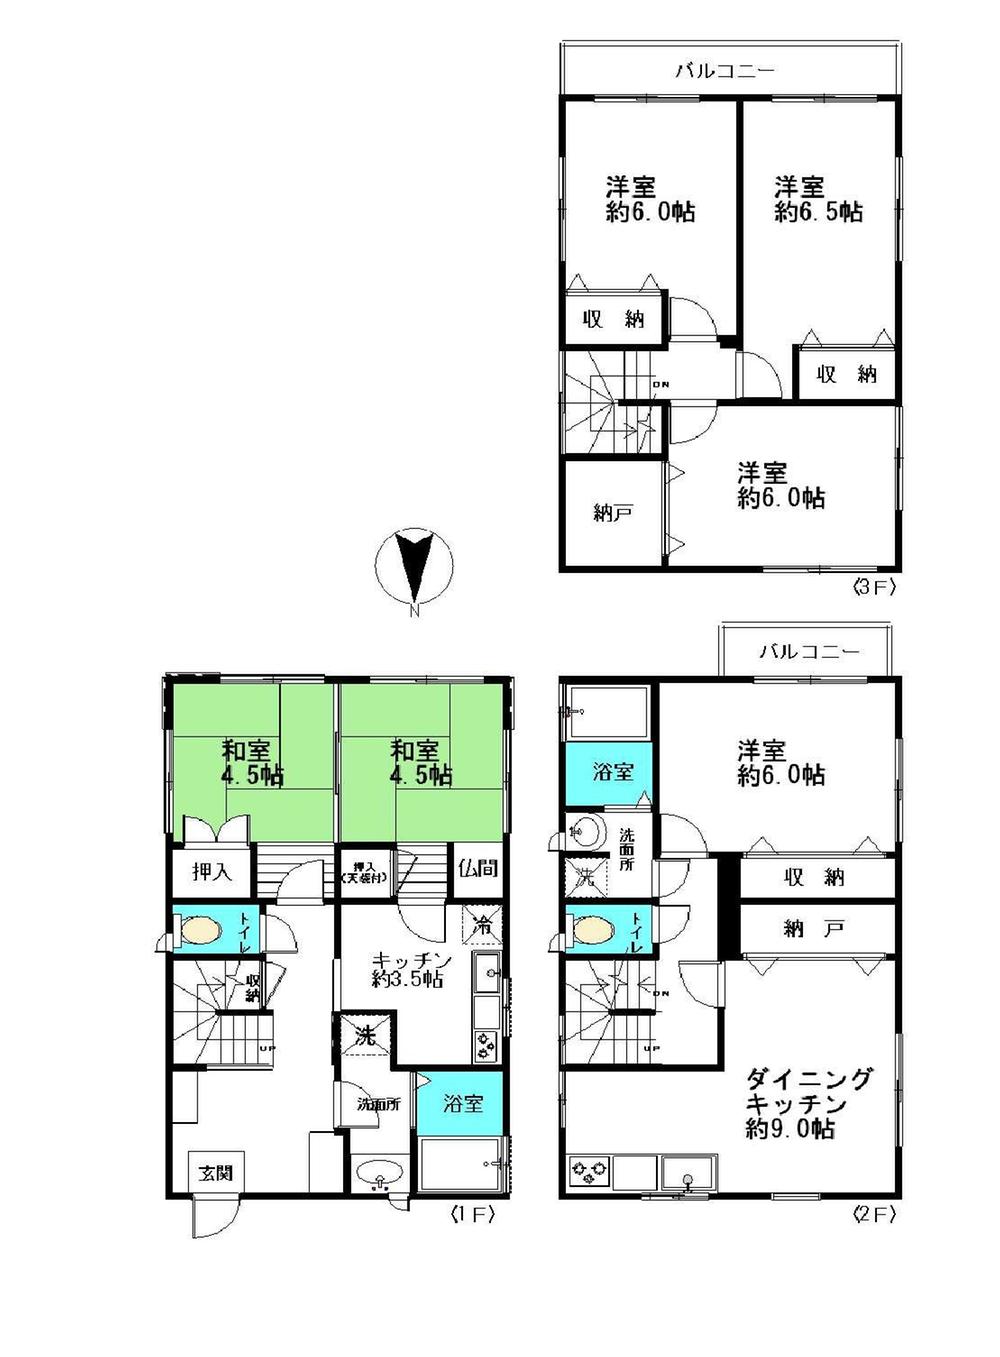 Floor plan. 19 million yen, 6DKK + S (storeroom), Land area 70.32 sq m , Building area 118.86 sq m 6DKK + storeroom